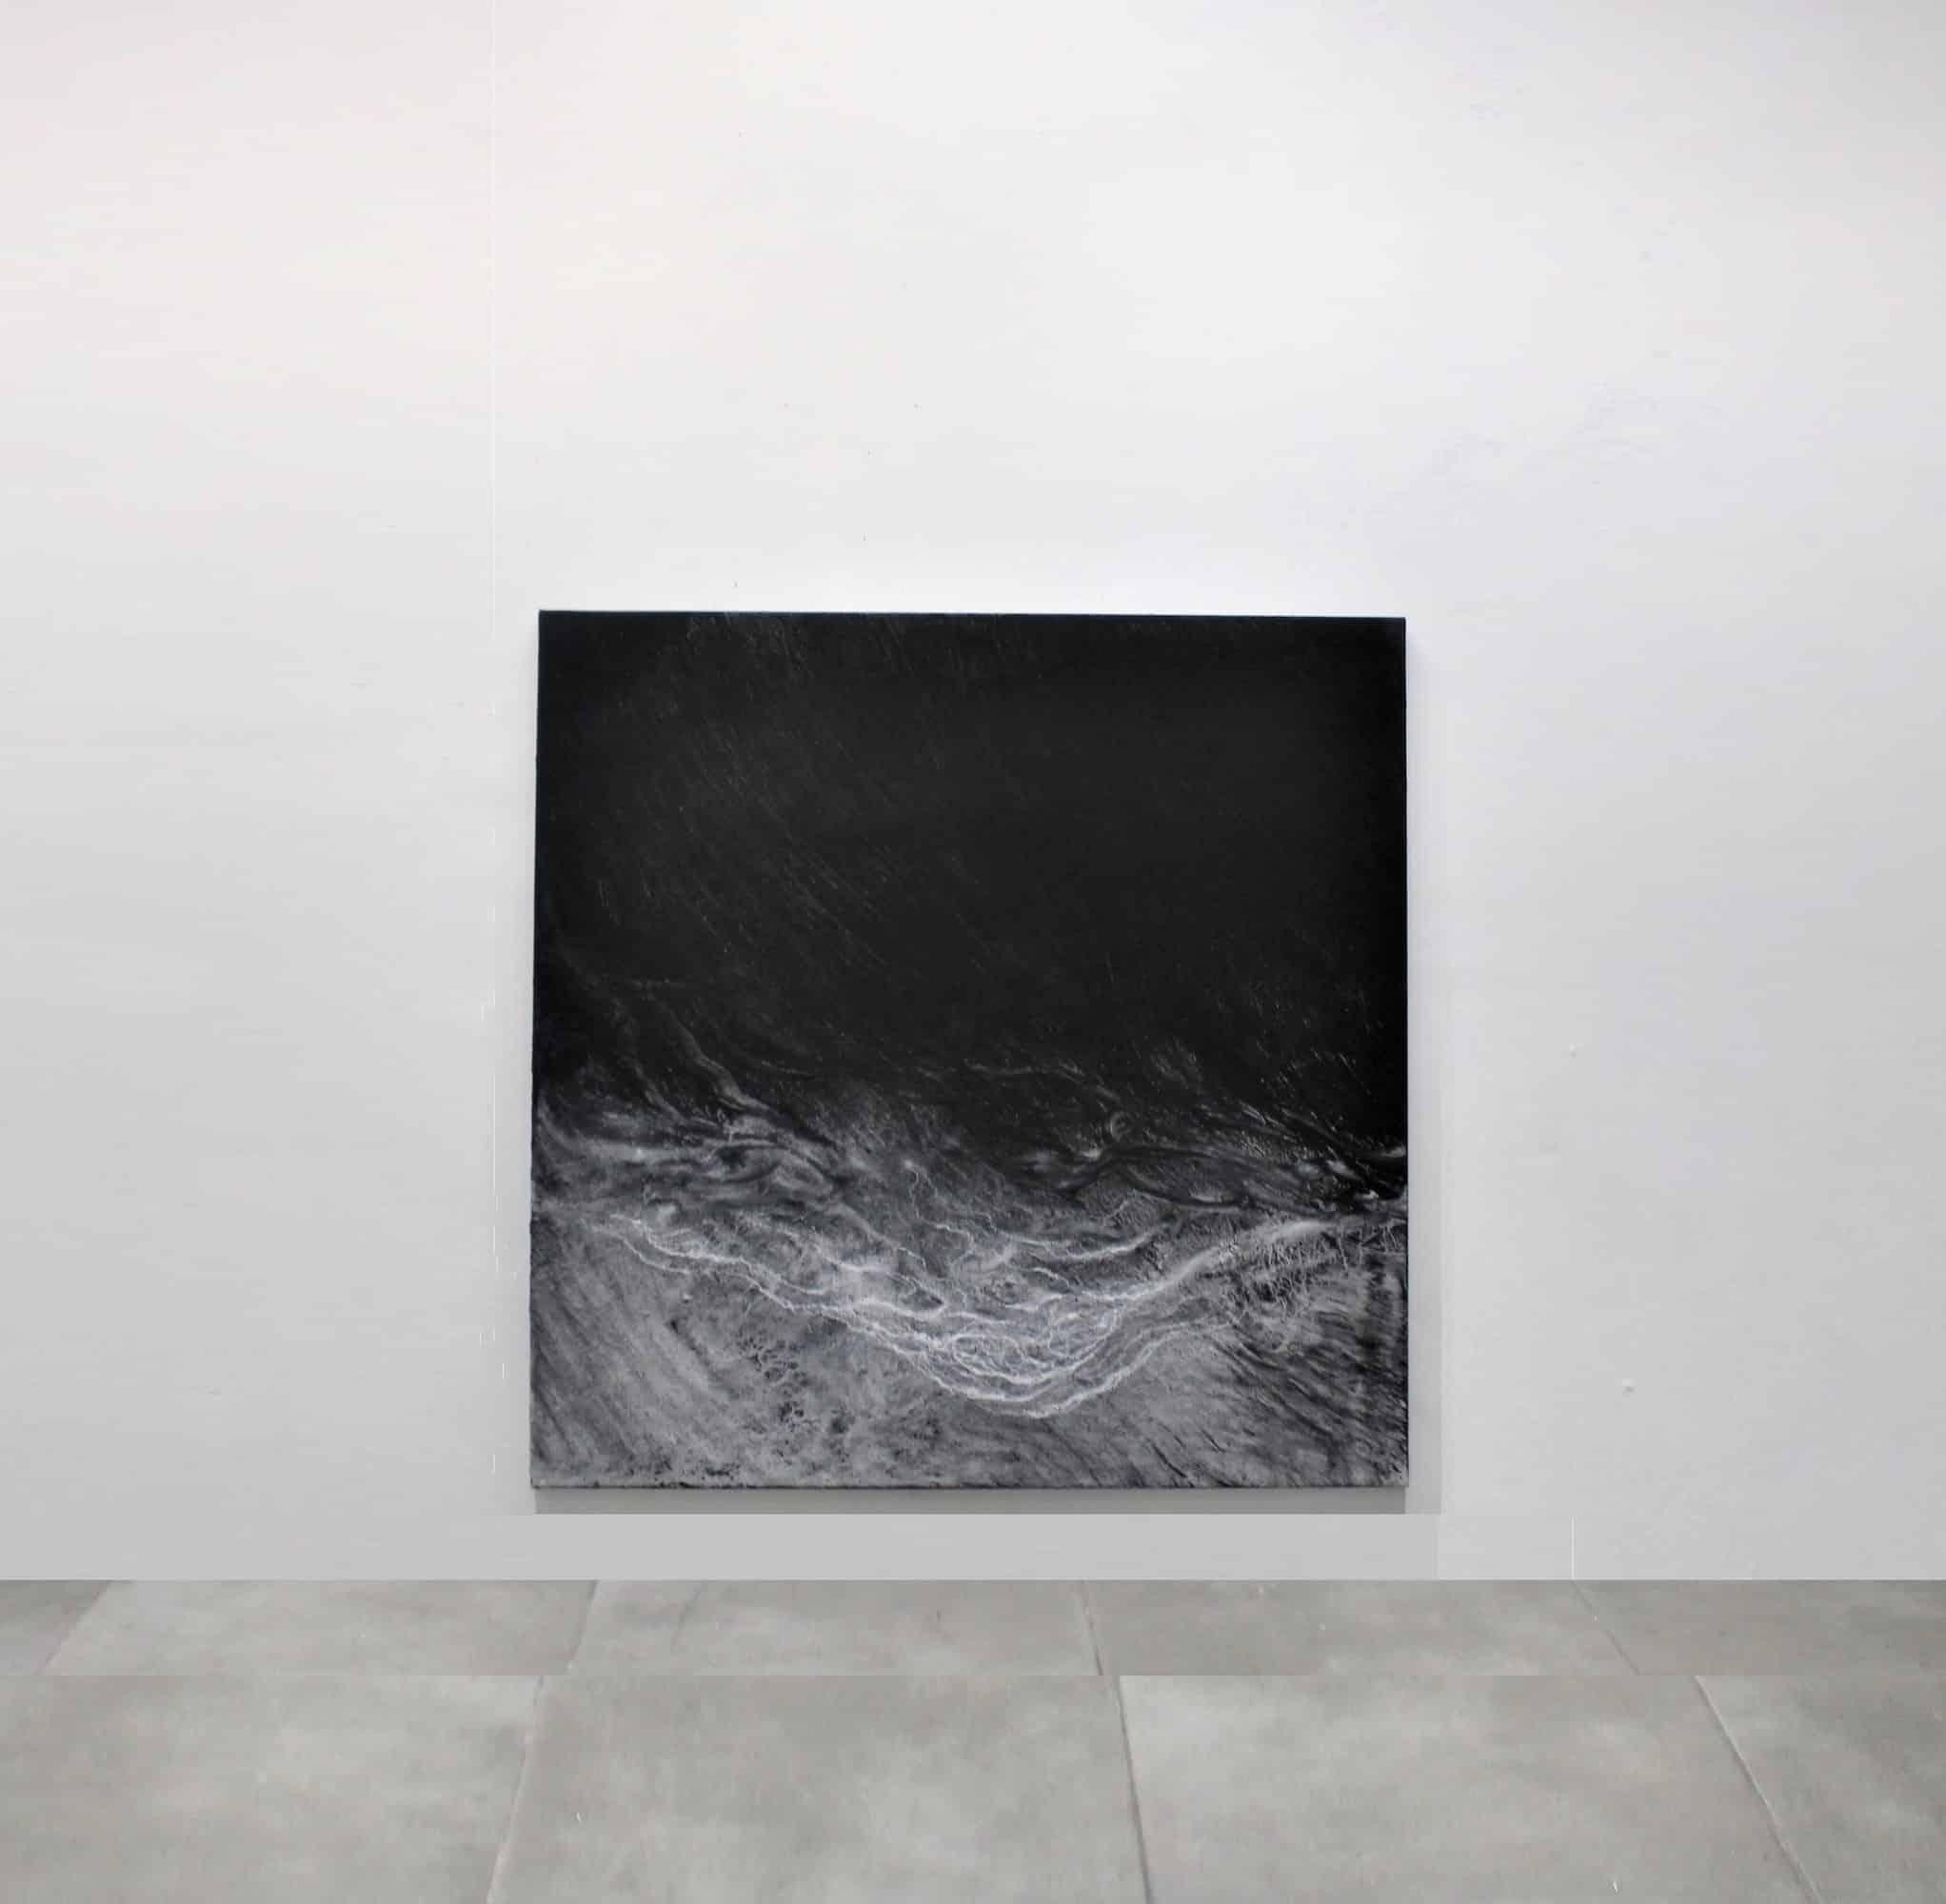 The void by Franco Salas Borquez - Black & white painting, ocean waves, seascape 3